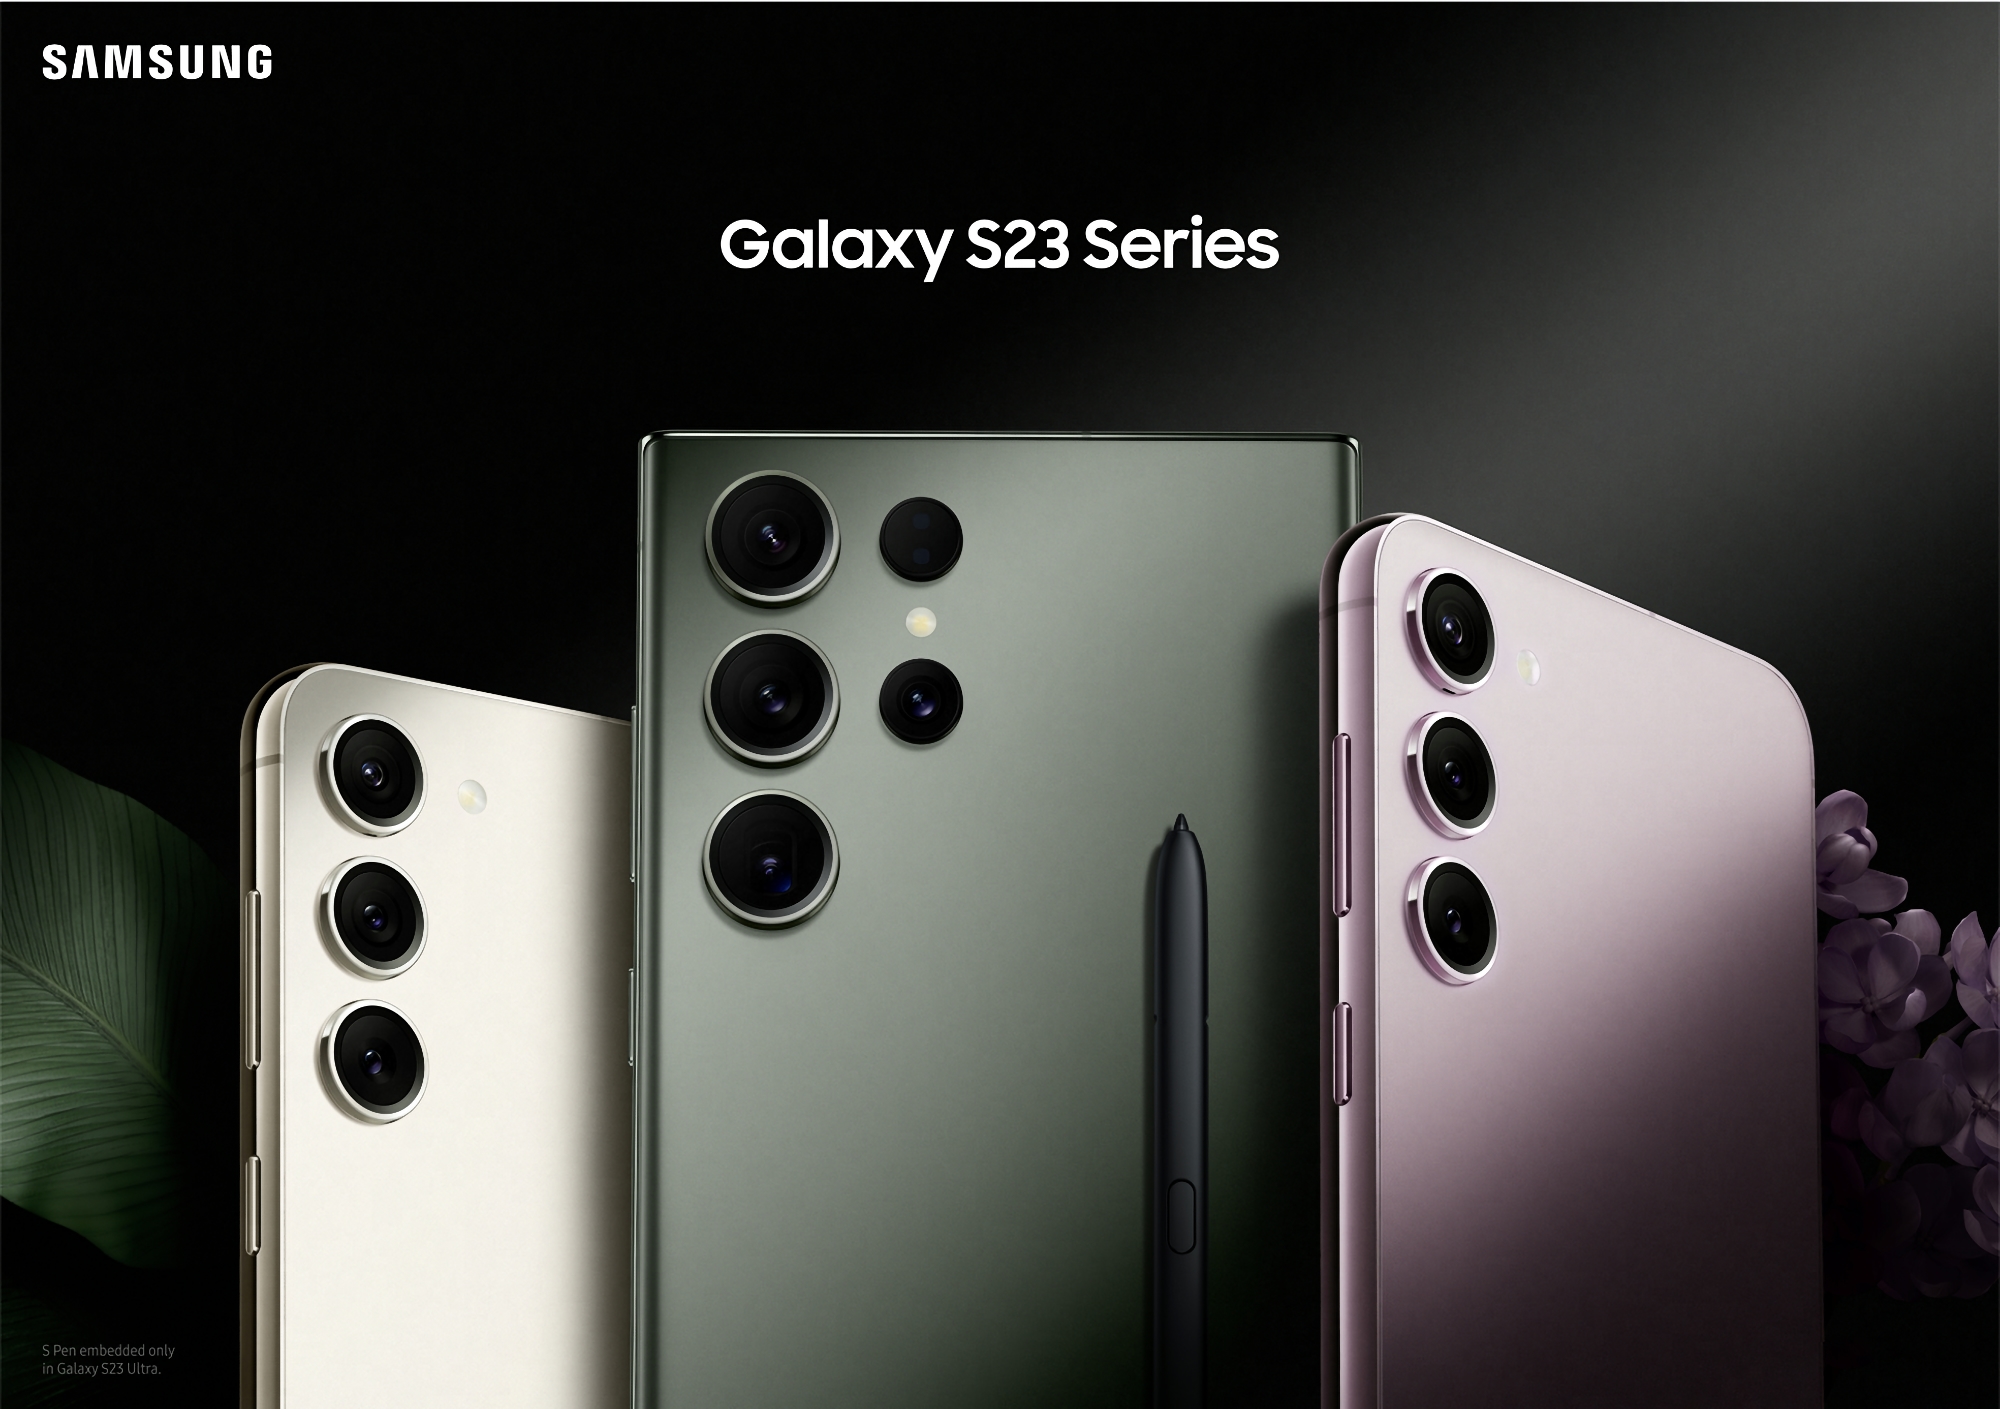 Les Samsung Galaxy S23, Galaxy S23+ et Galaxy S23 Ultra ont reçu la deuxième version bêta de One UI 6.0 basée sur Android 14.